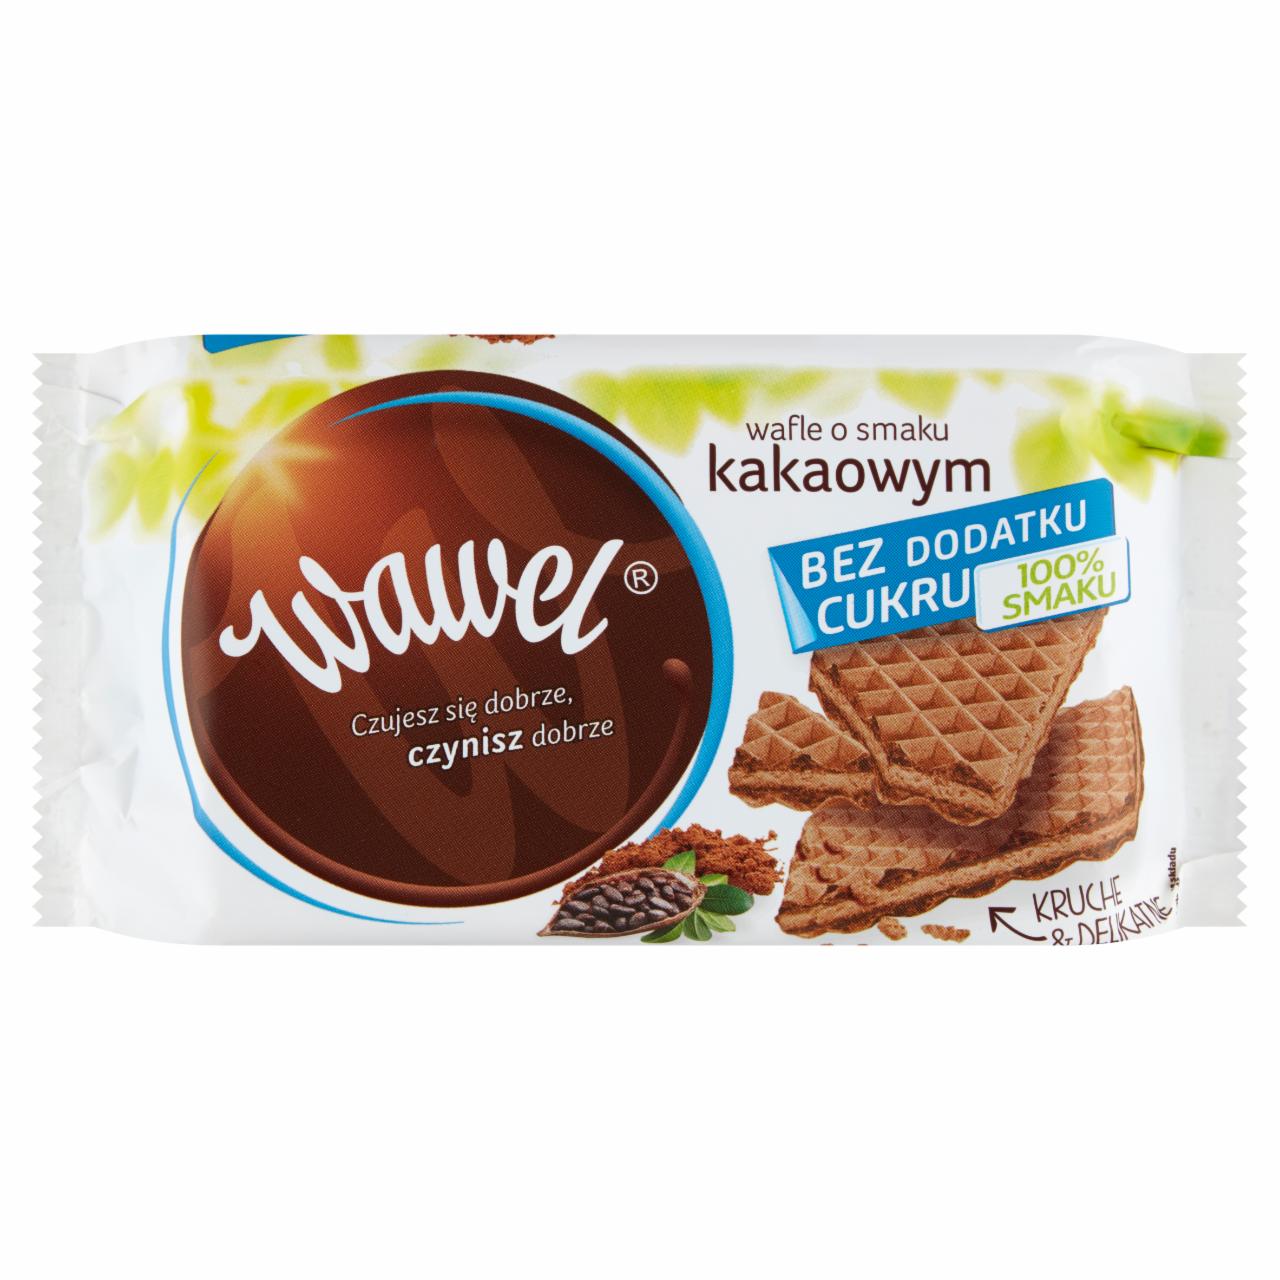 Zdjęcia - Wawel Bez dodatku cukru Wafle o smaku kakaowym 110 g